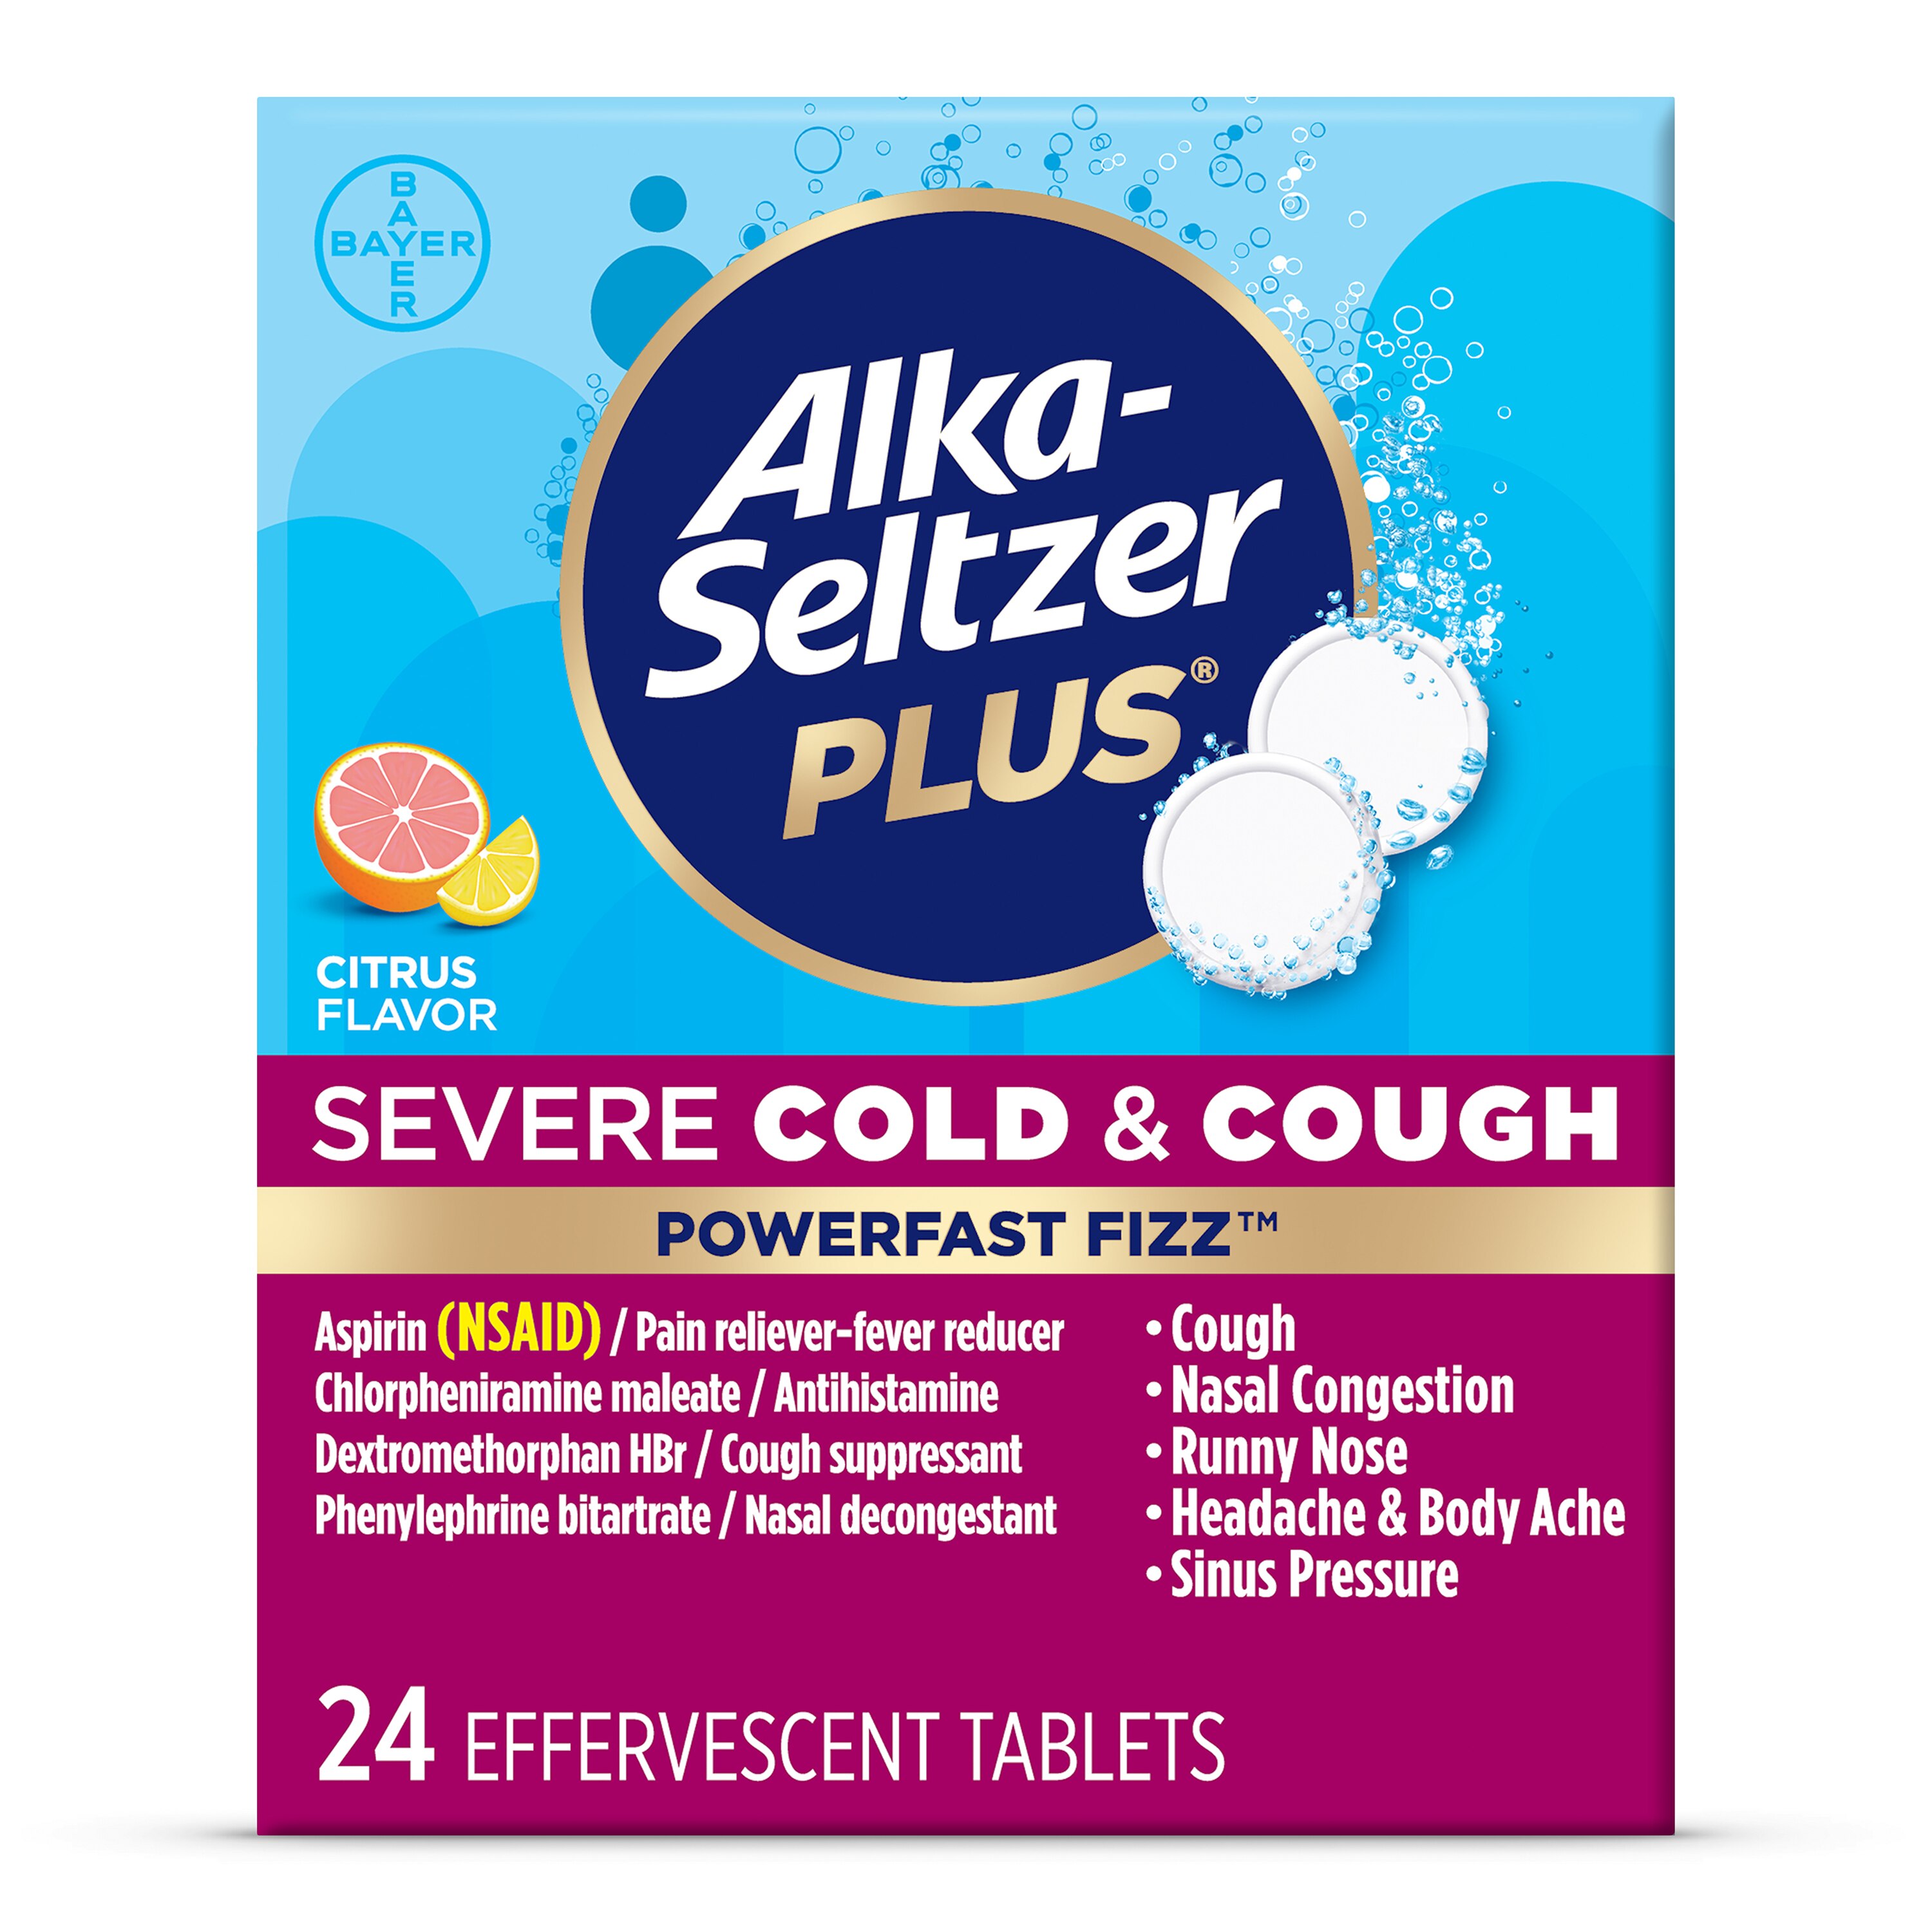 Alka-Seltzer Plus Severe Cold & Cough PowerFast Fizz Citrus Effervescent Tablets, 24 CT